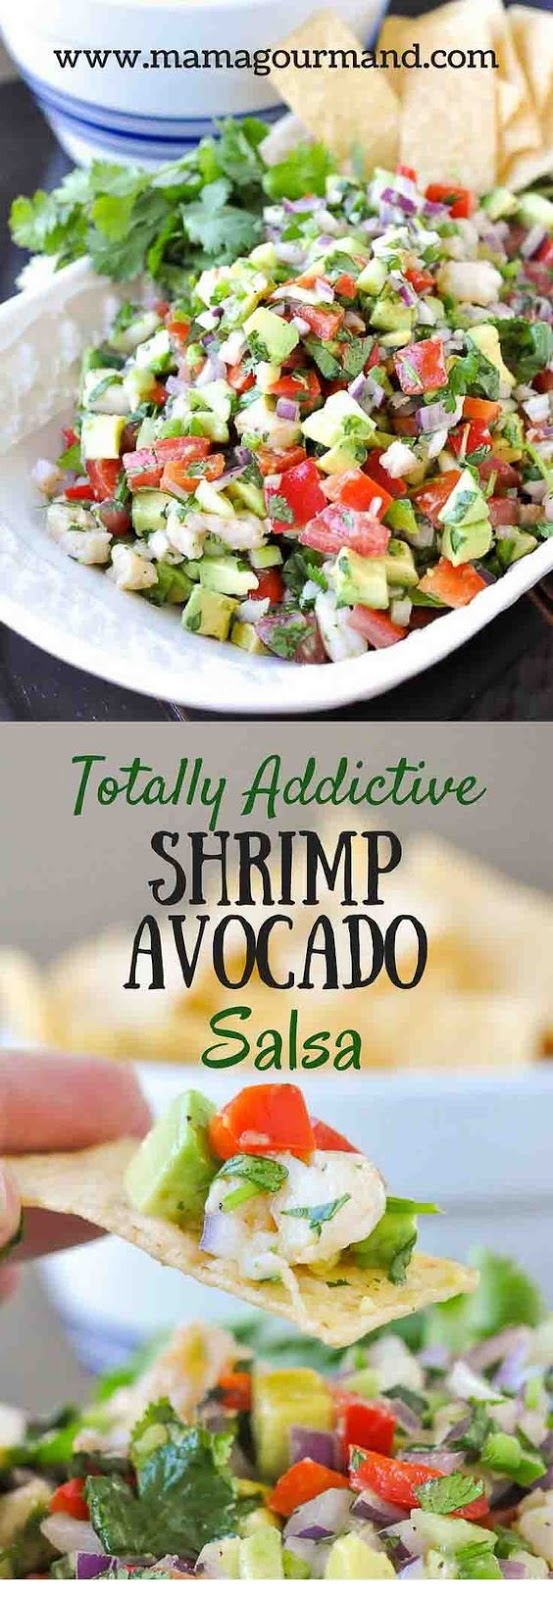 Totally Addictive Shrimp Avocado Salsa